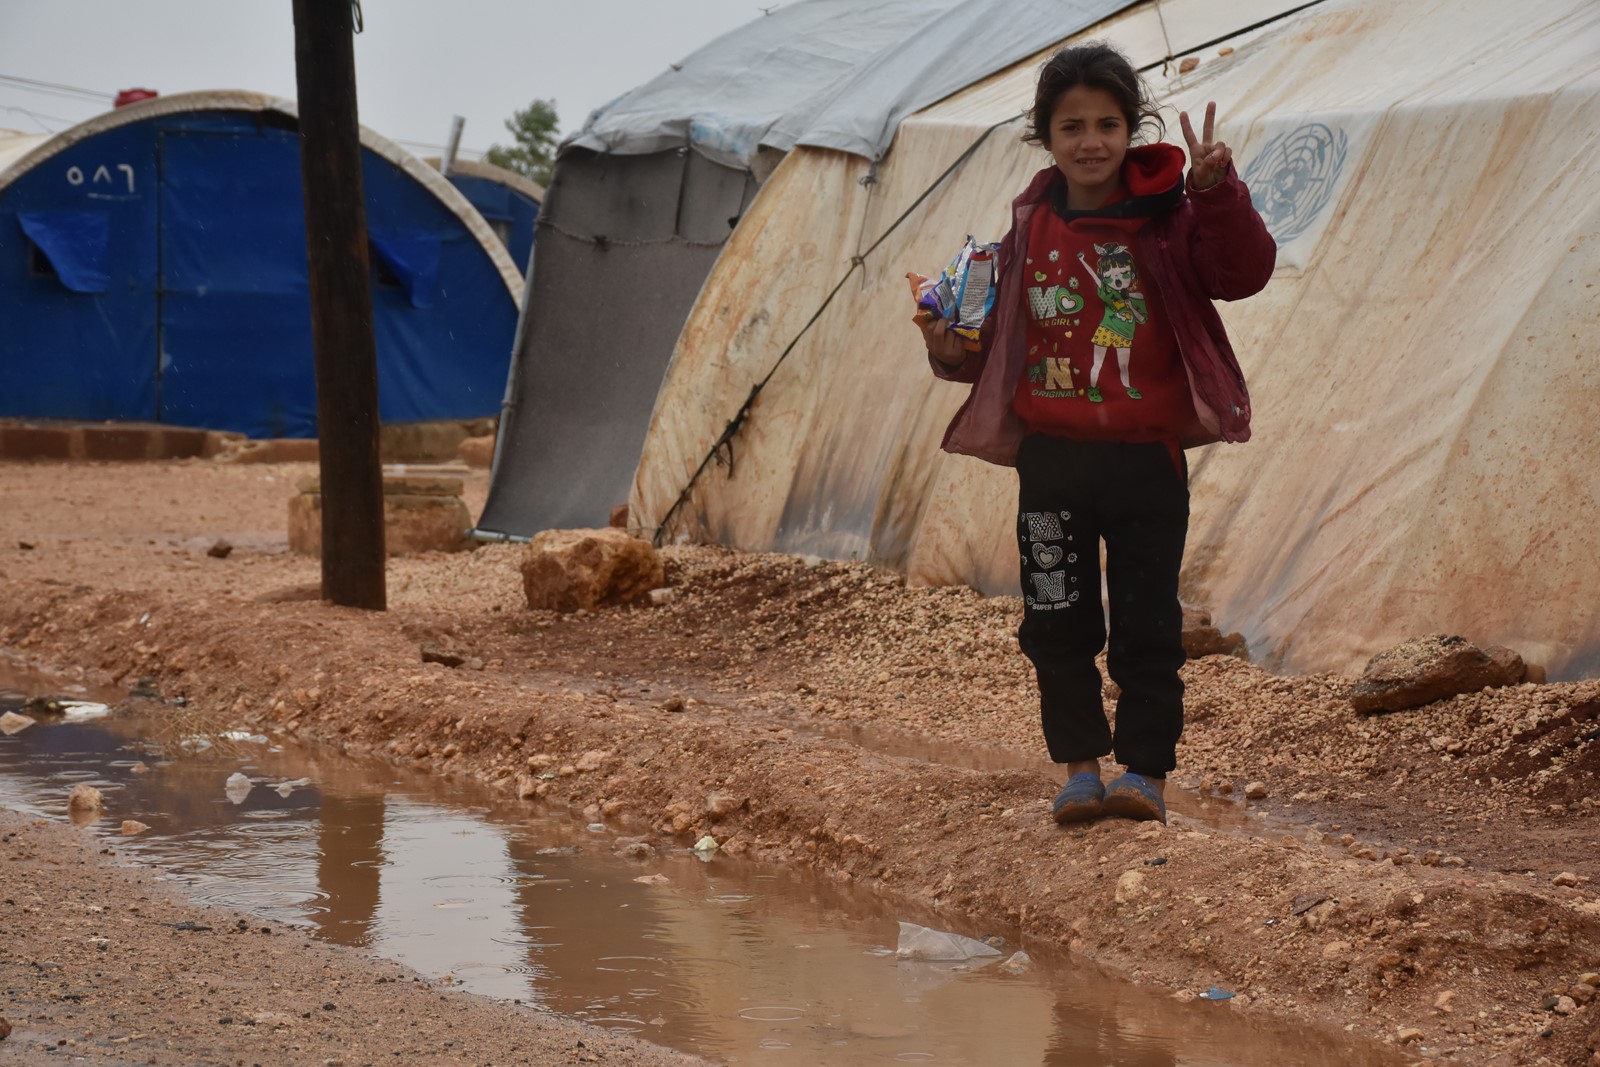 Şam hükümetinin ambargosu, Efrînli çocukların acılarını katlıyor